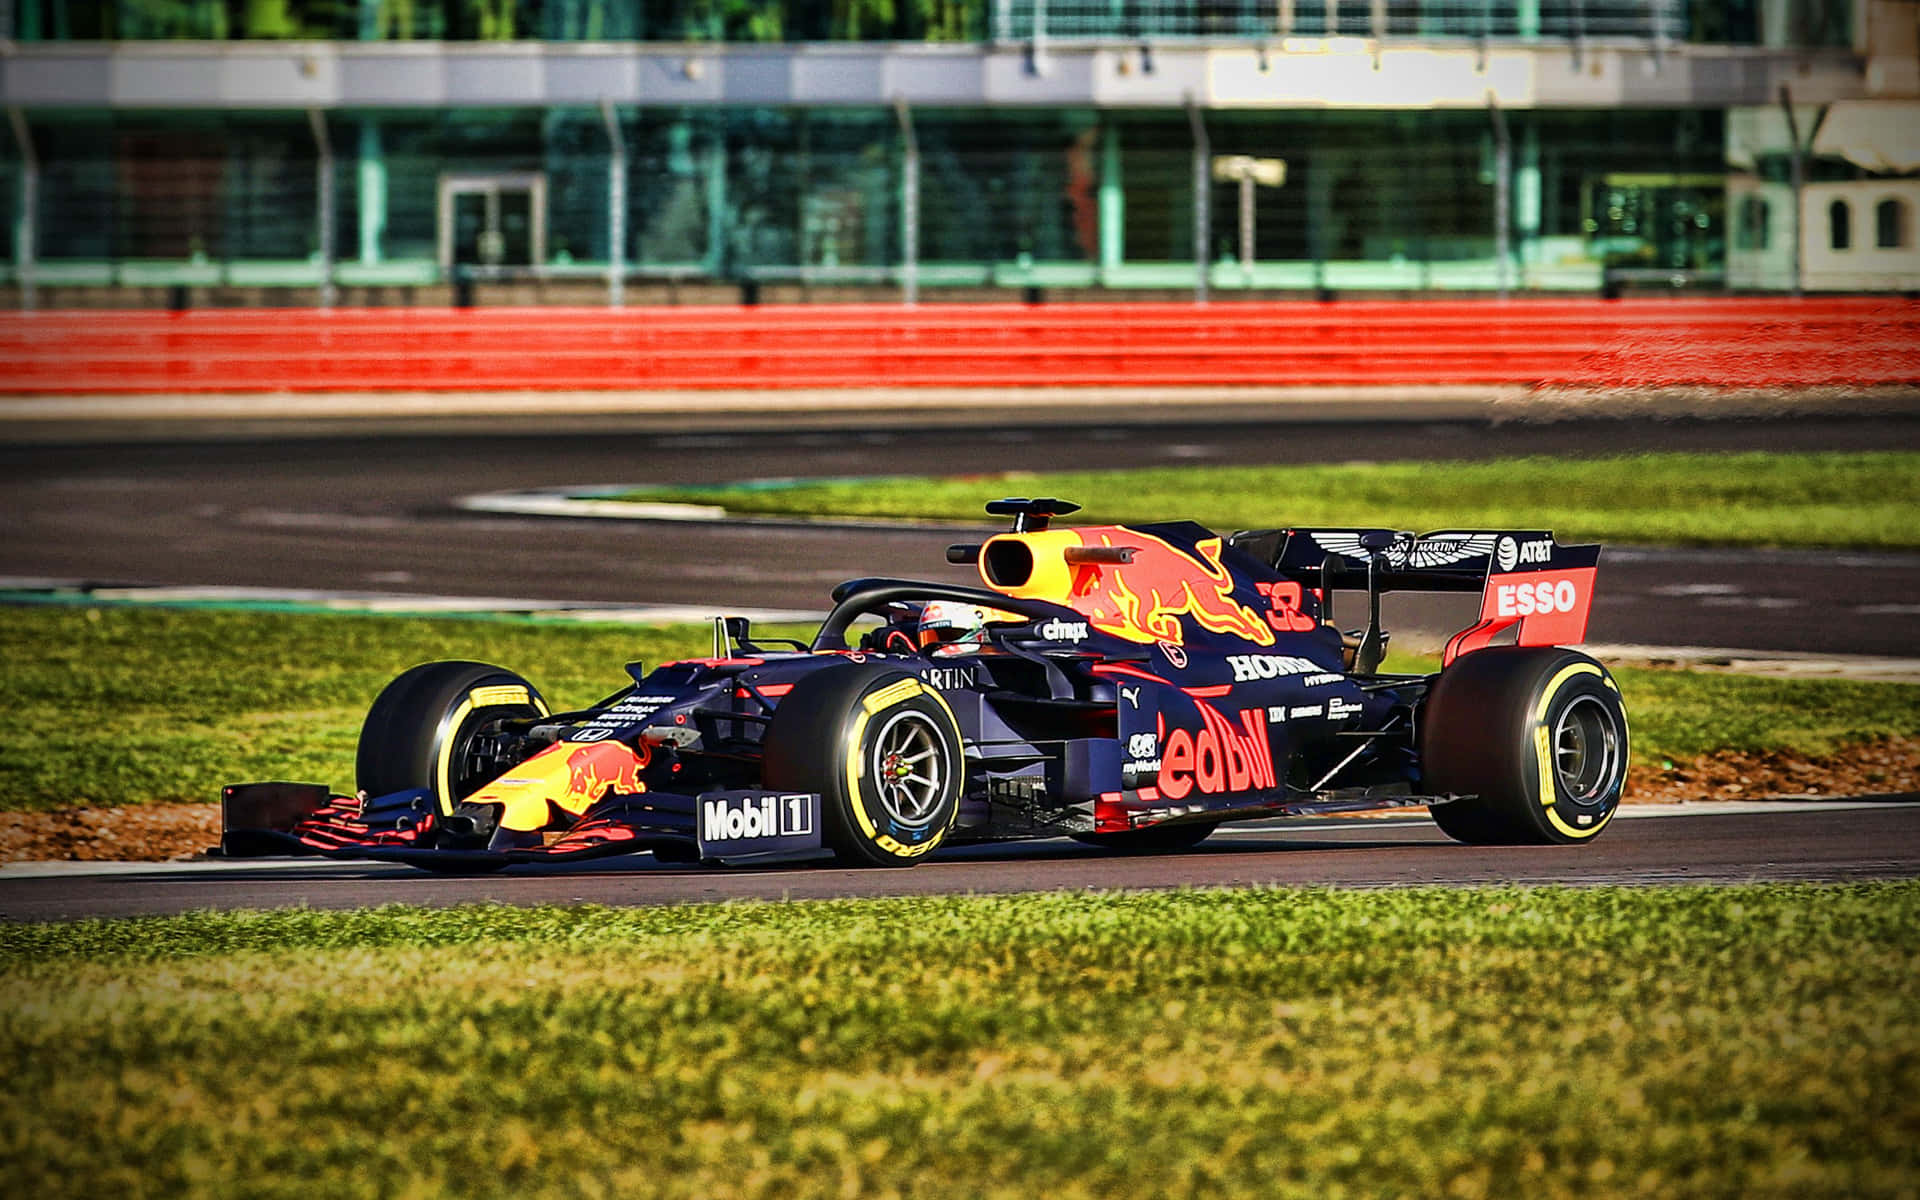 Max Verstappen racing in his Red Bull car